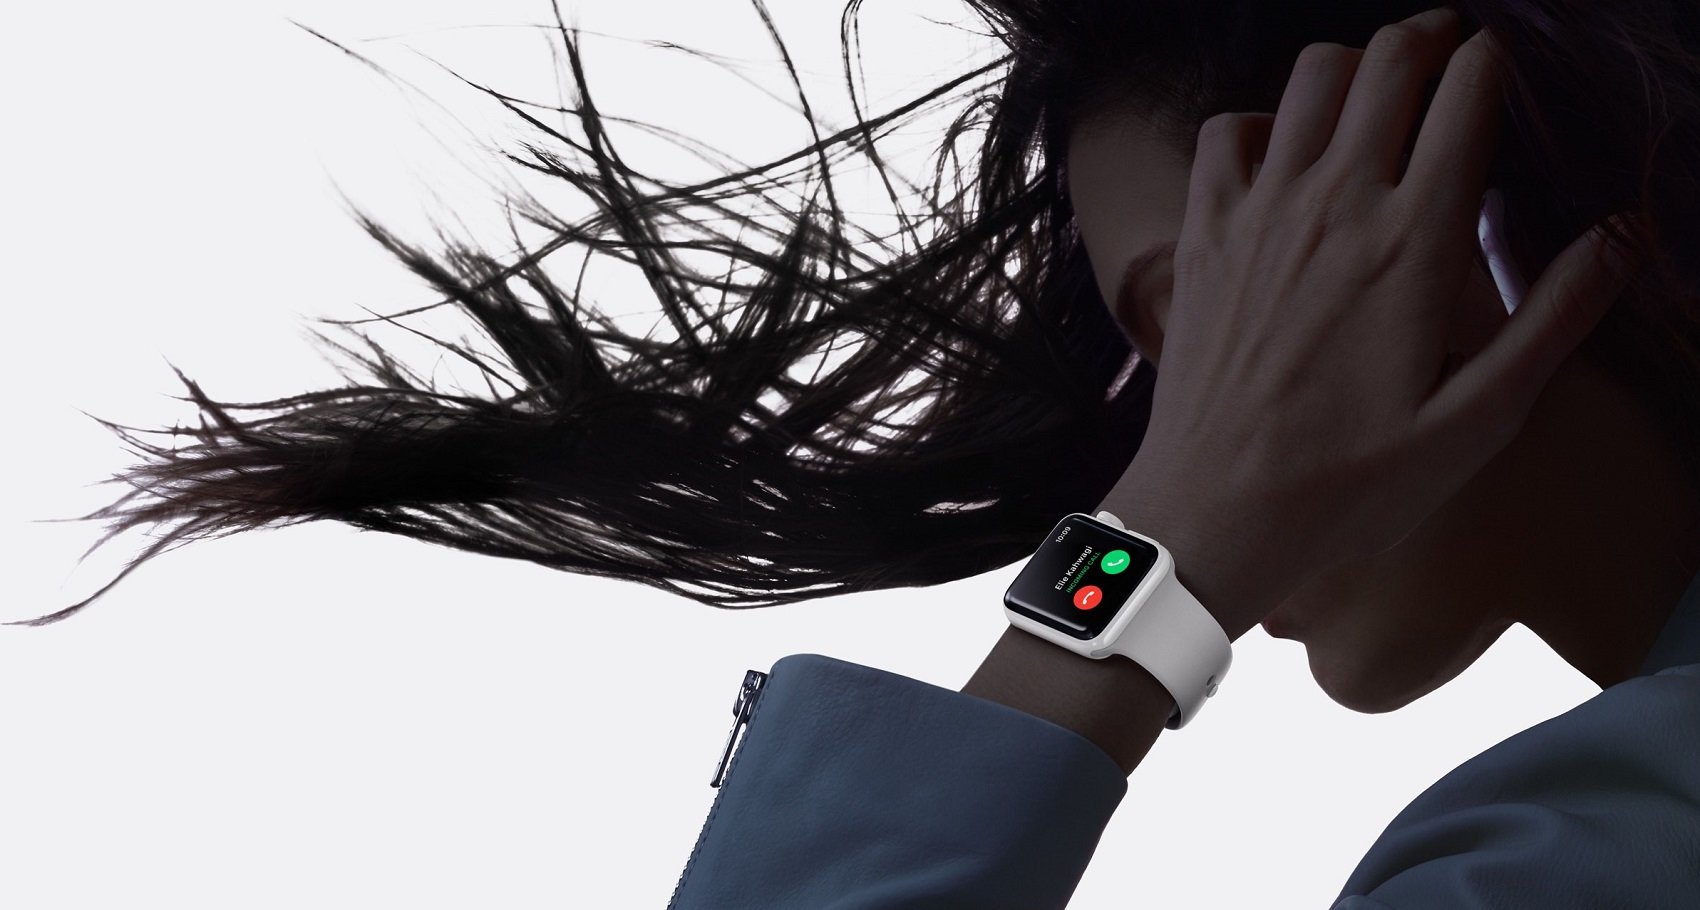 Το Apple Watch Series 4 θα διαθέτει κατά 15% μεγαλύτερη οθόνη και νέο design σύμφωνα με φήμες